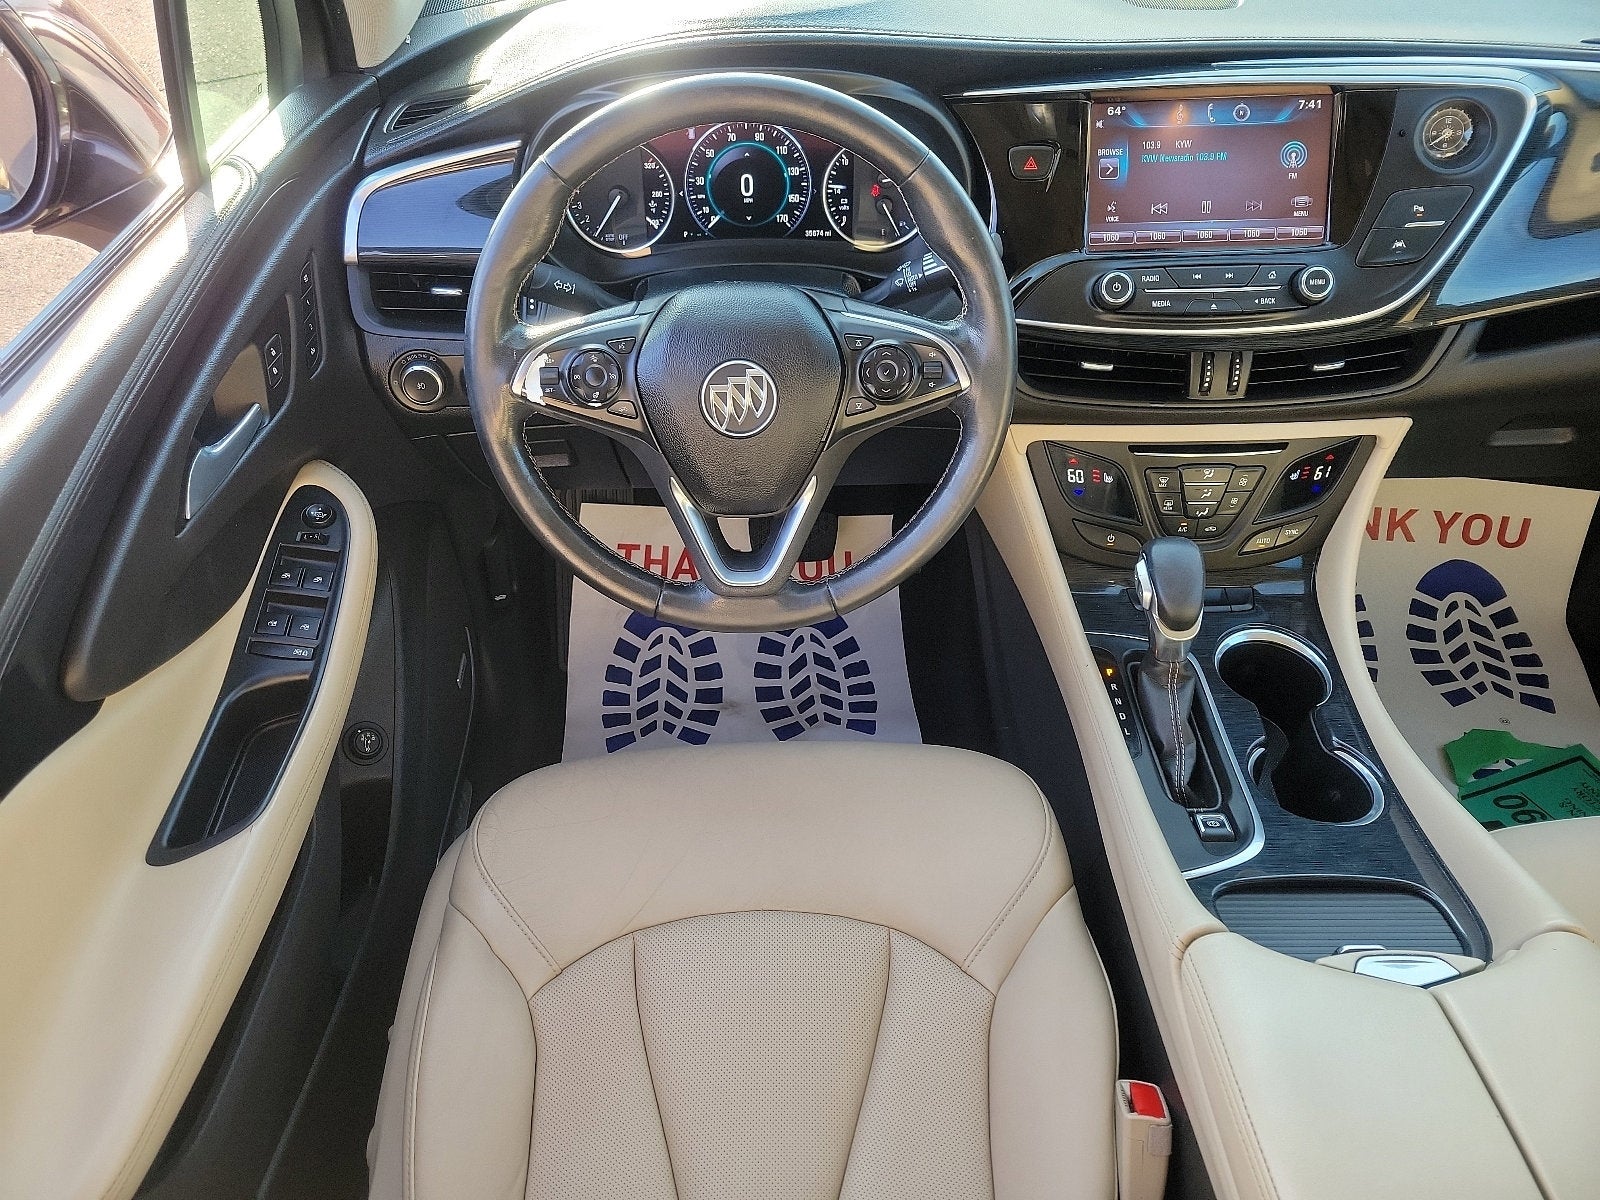 2016 Buick Envision Premium I